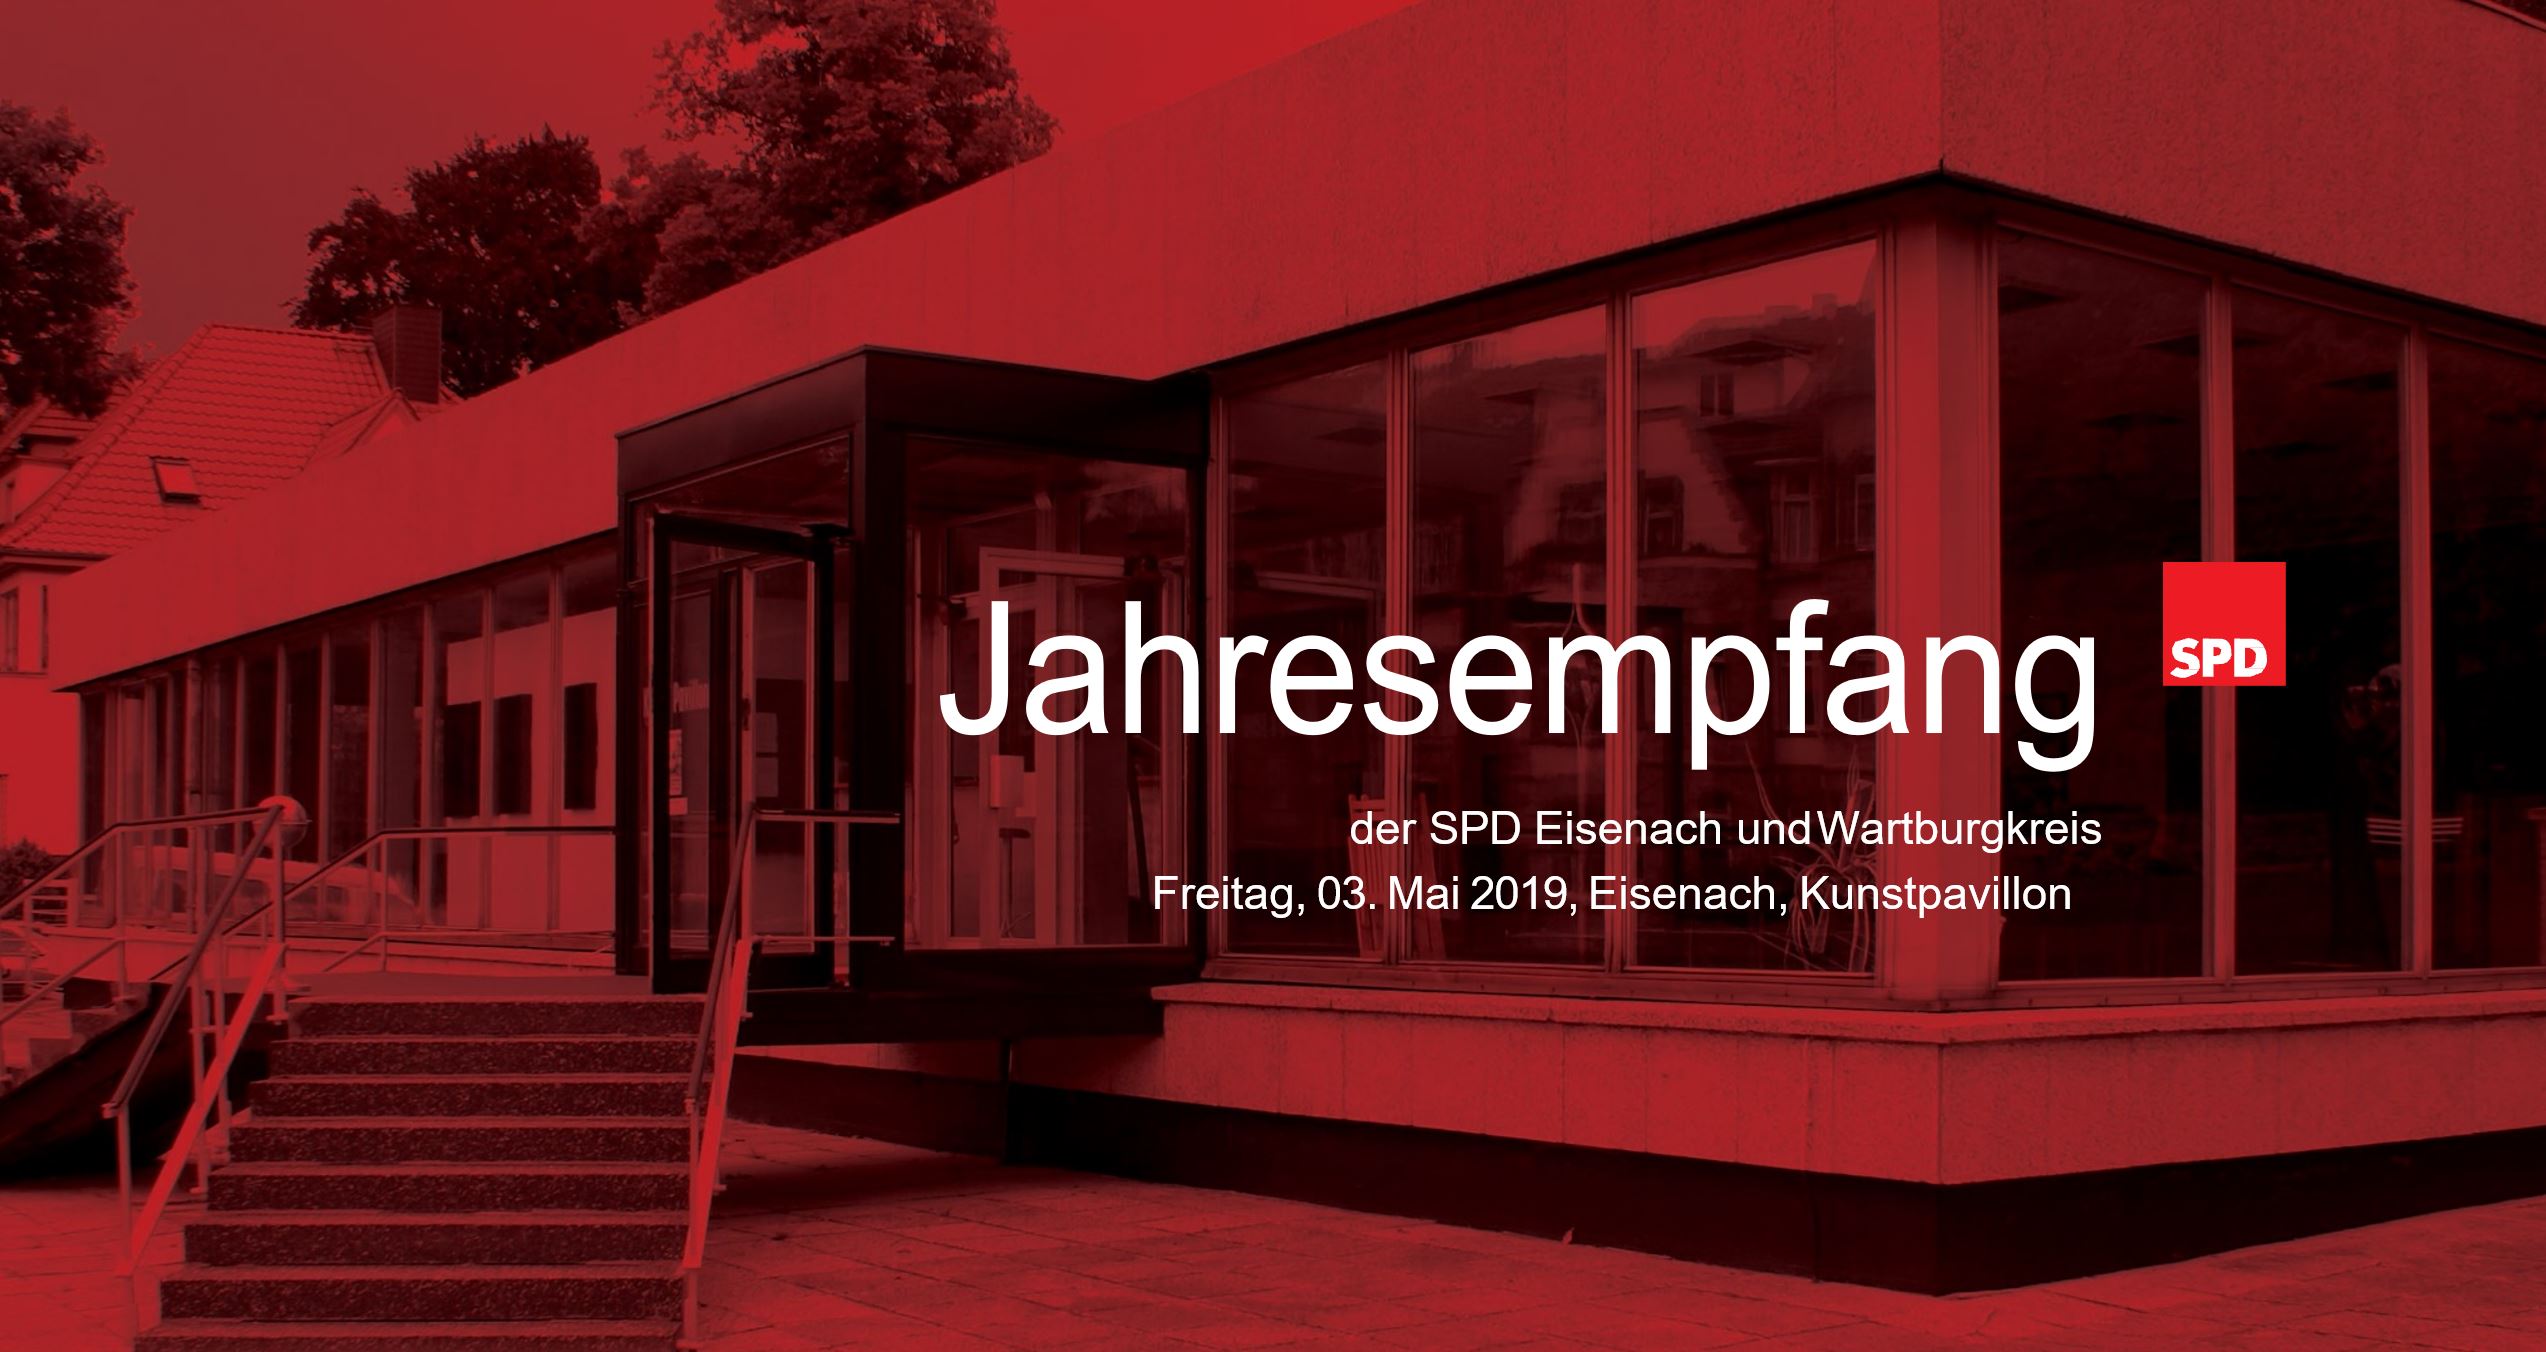 Einladung zum Jahresempfang der SPD Eisenach und SPD Wartburgkreis